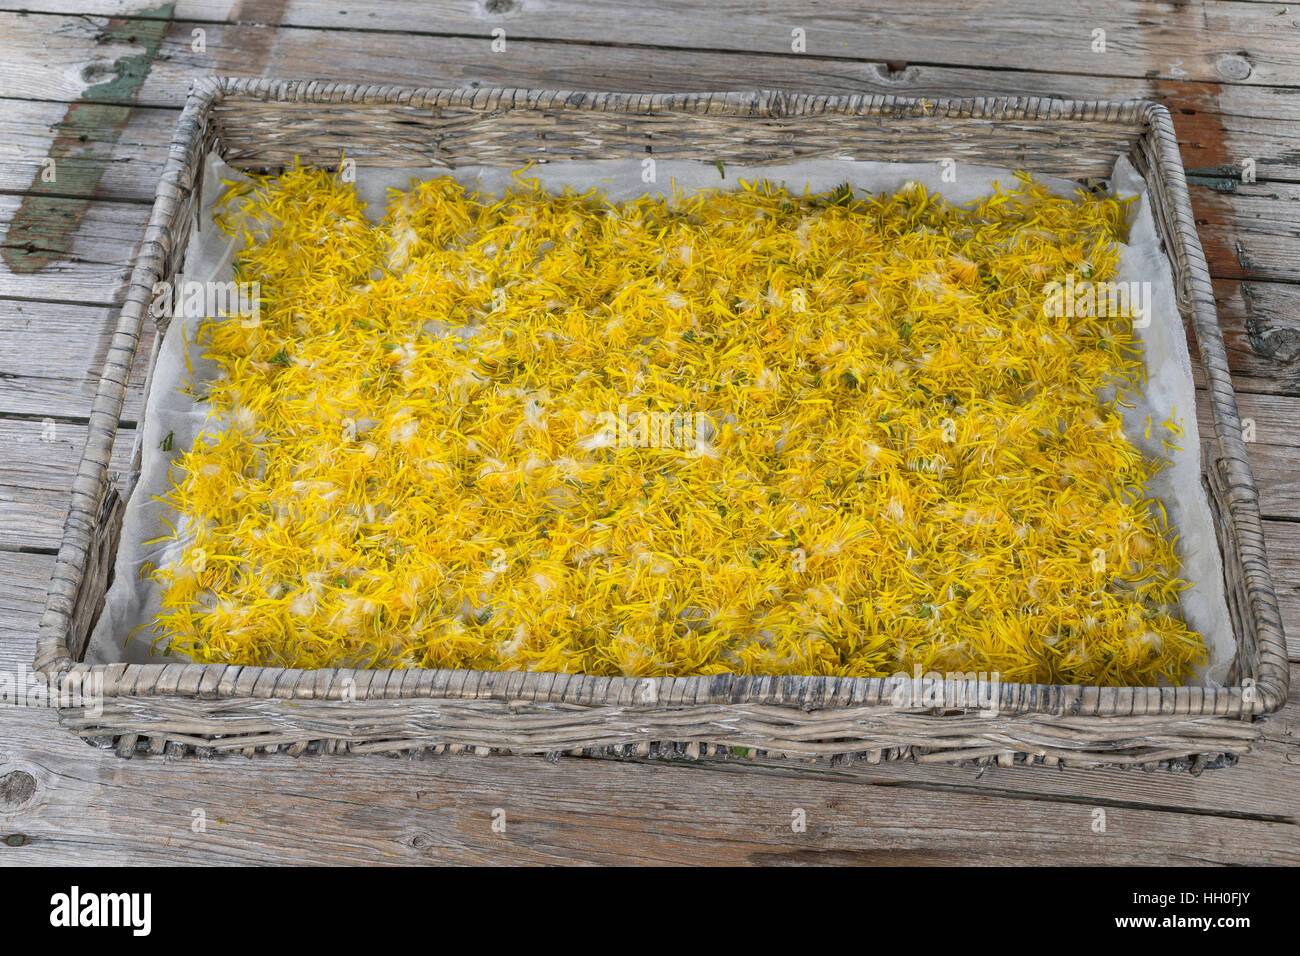 Löwenzahnblüten trocknen auf einem Tablett, getrocknete Blüten, Blüte,  Löwenzahn-Blüten-Ernte, Wiesen-Löwenzahn, Gemeiner Löwenzahn, Kuhblume,  Taraxac Stock Photo - Alamy